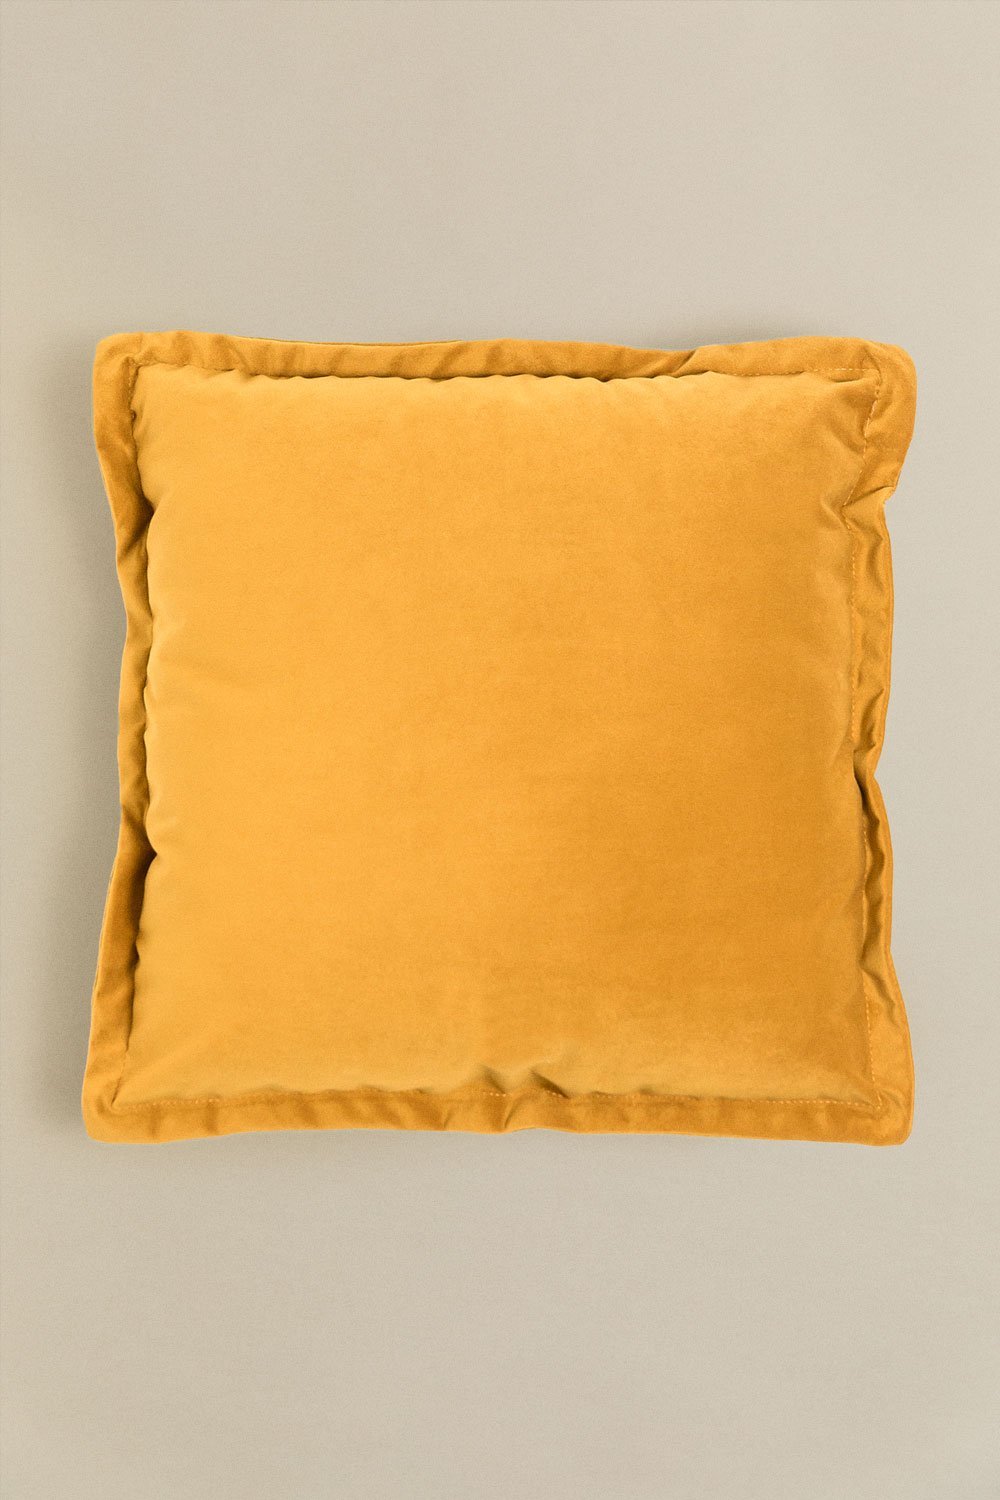 Cuscino quadrato in velluto (53x53 cm) Kata, immagine della galleria 1